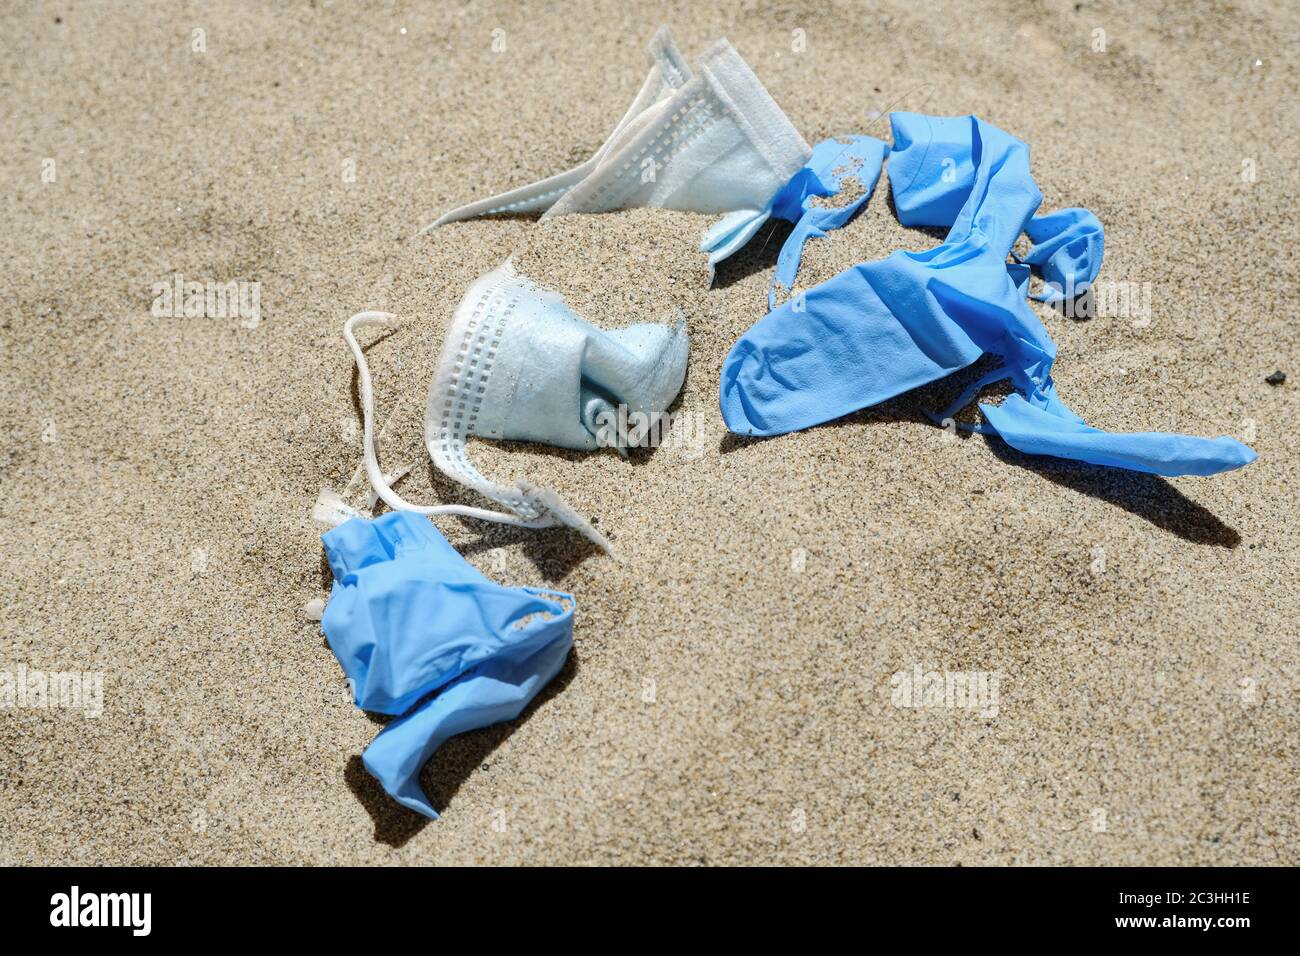 Maschera virus e guanti di plastica spazzatura sulla costa del mare, malattia di inquinamento da covidi coronavirus, ecosistema sporco Foto Stock